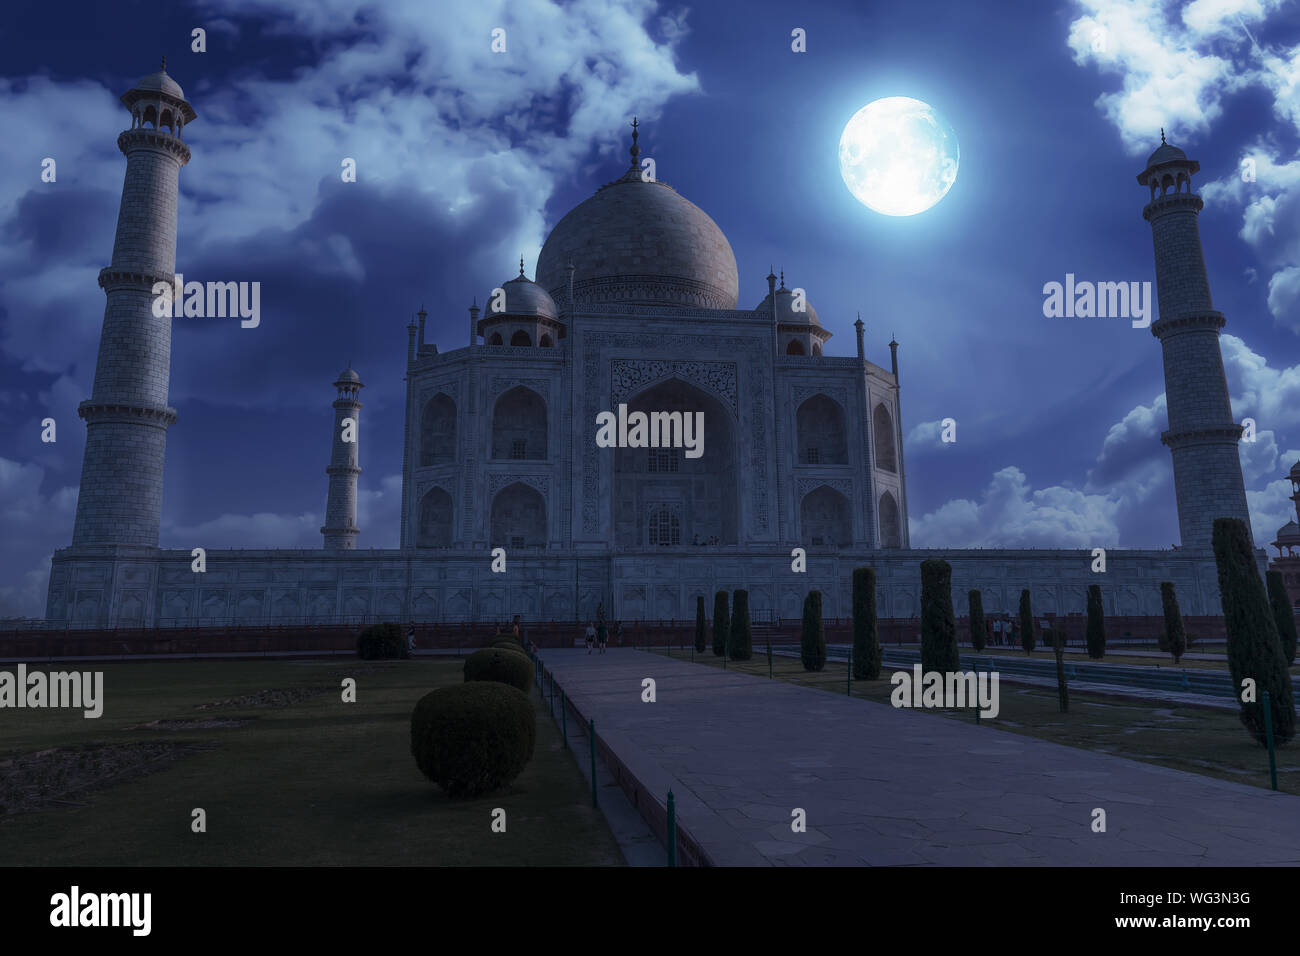 Taj Mahal Agra on a full moon night. Taj Mahal is a UNESCO World